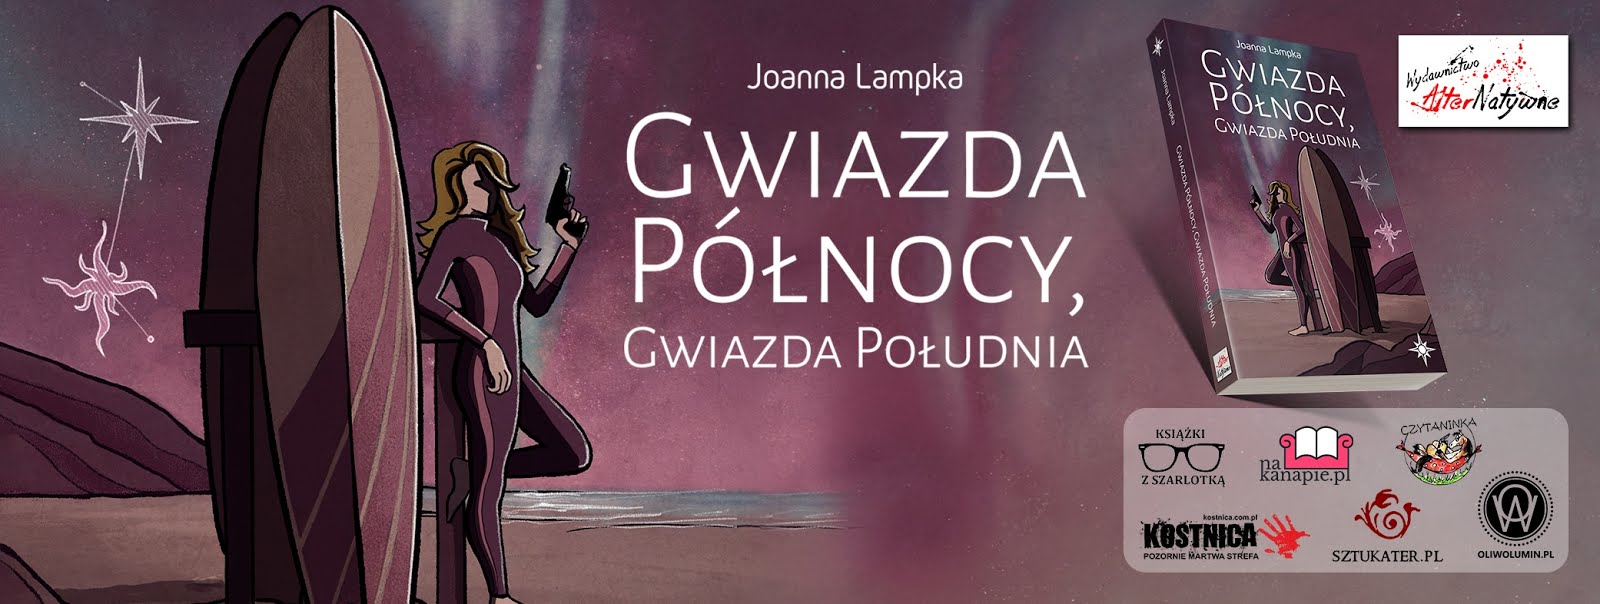 Gwiazda Północy, Gwiazda Południa – Joanna Lampka – Oficjalna strona książki